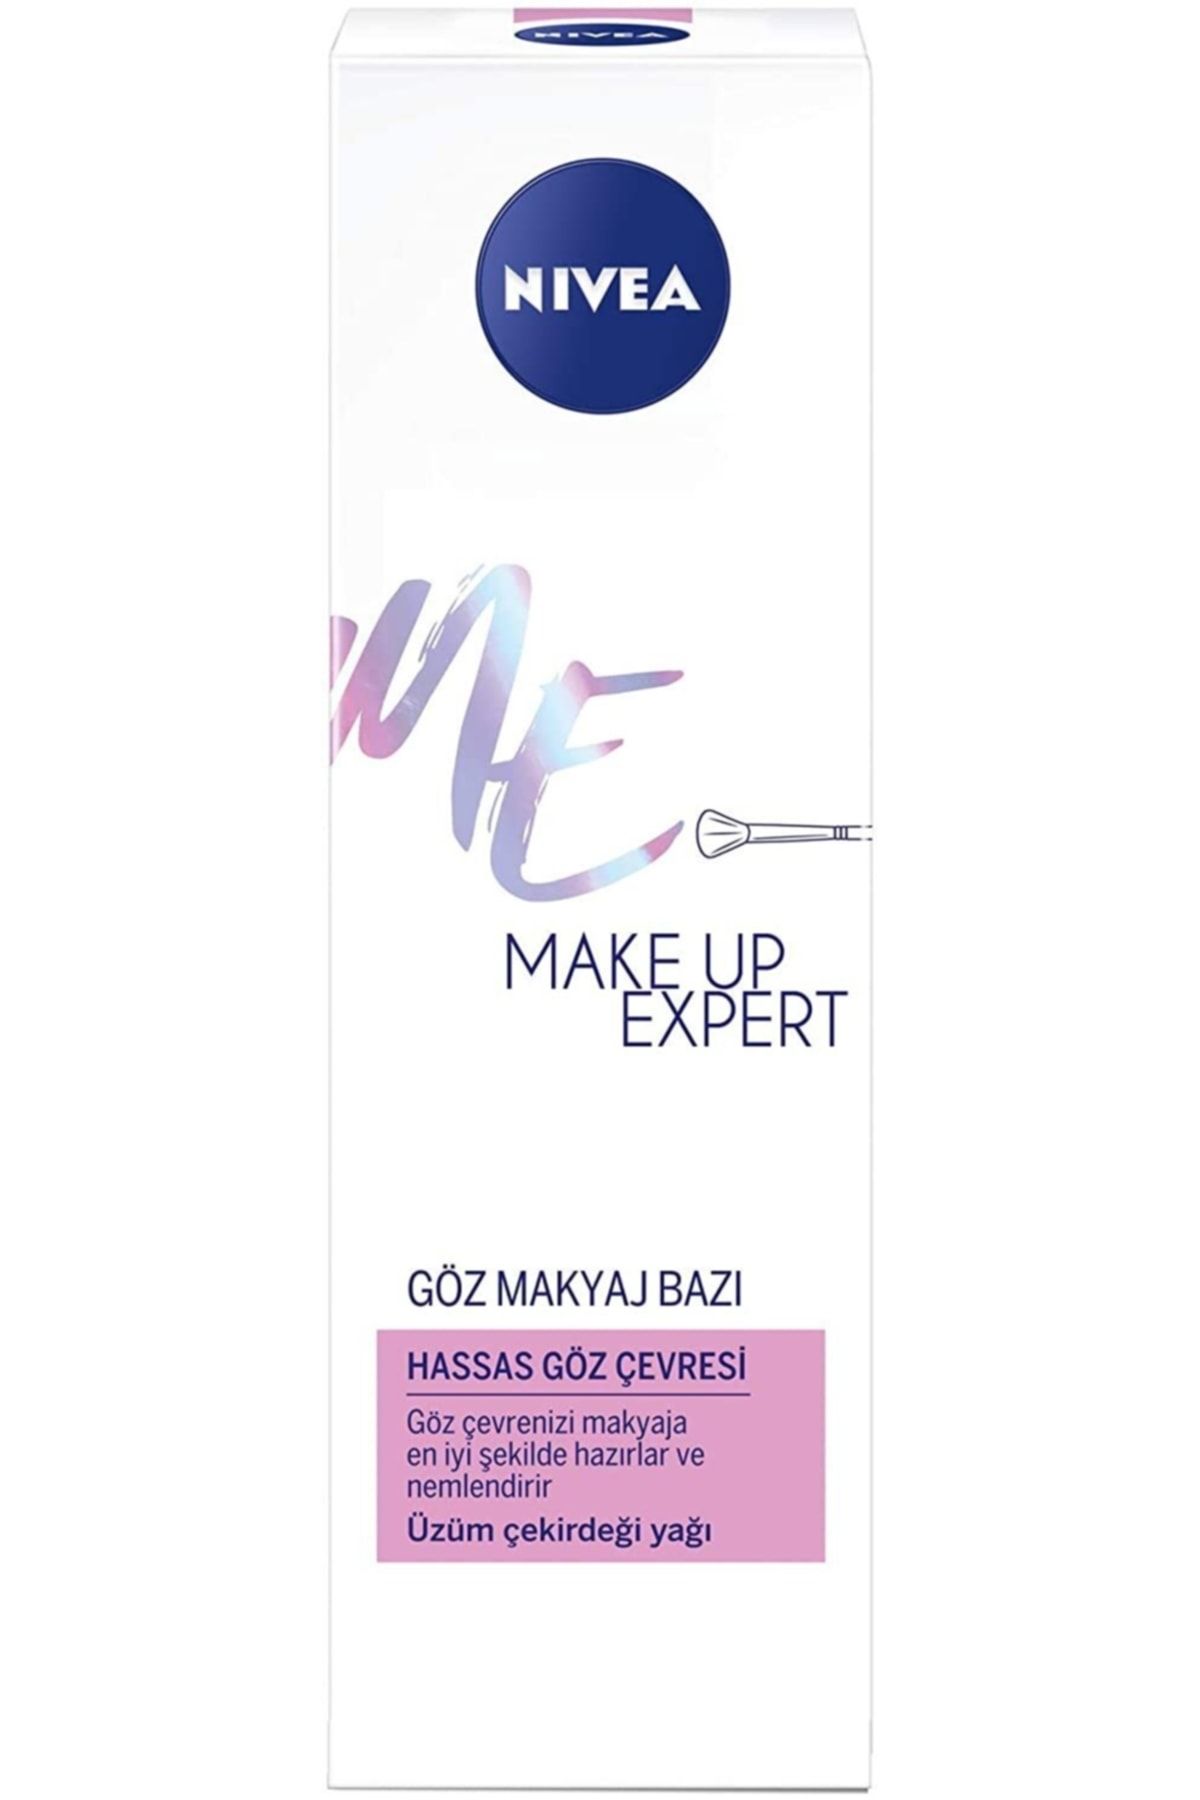 NIVEA Make Up Expert Nemlendirici Göz Makyaj Bazı 15 Ml Makyaj Bazı